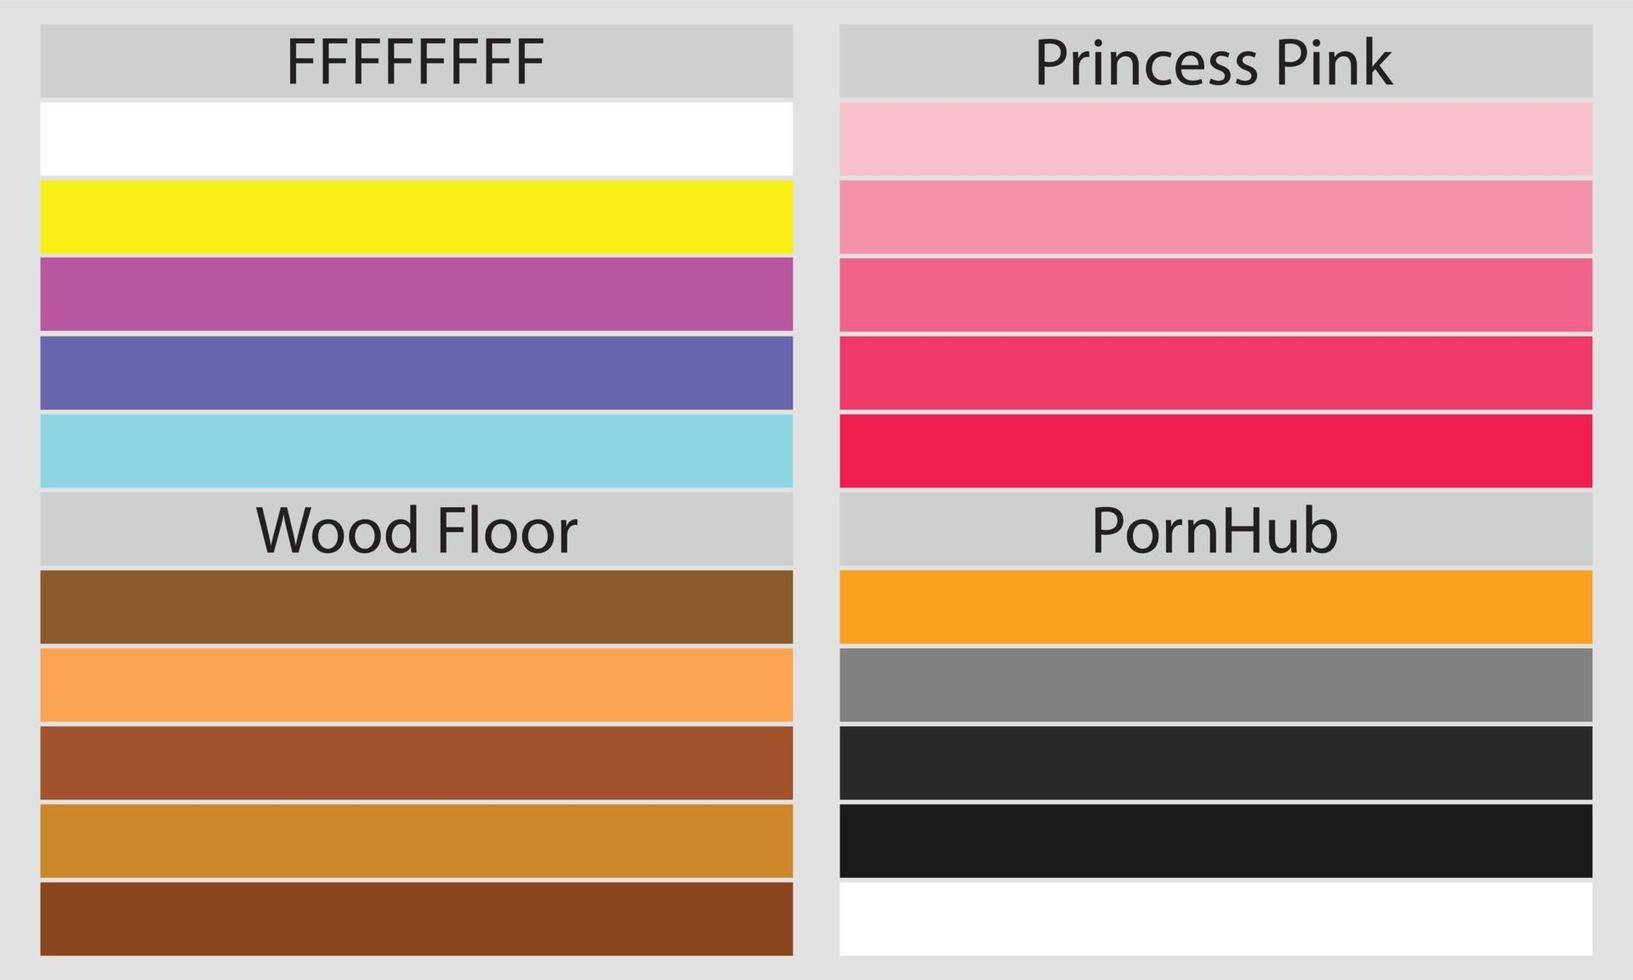 paletas de colores una paleta de colores es un conjunto de colores utilizados en un diseño o proyecto visual. estos colores se eligen cuidadosamente para crear un diseño cohesivo y visualmente atractivo. vector